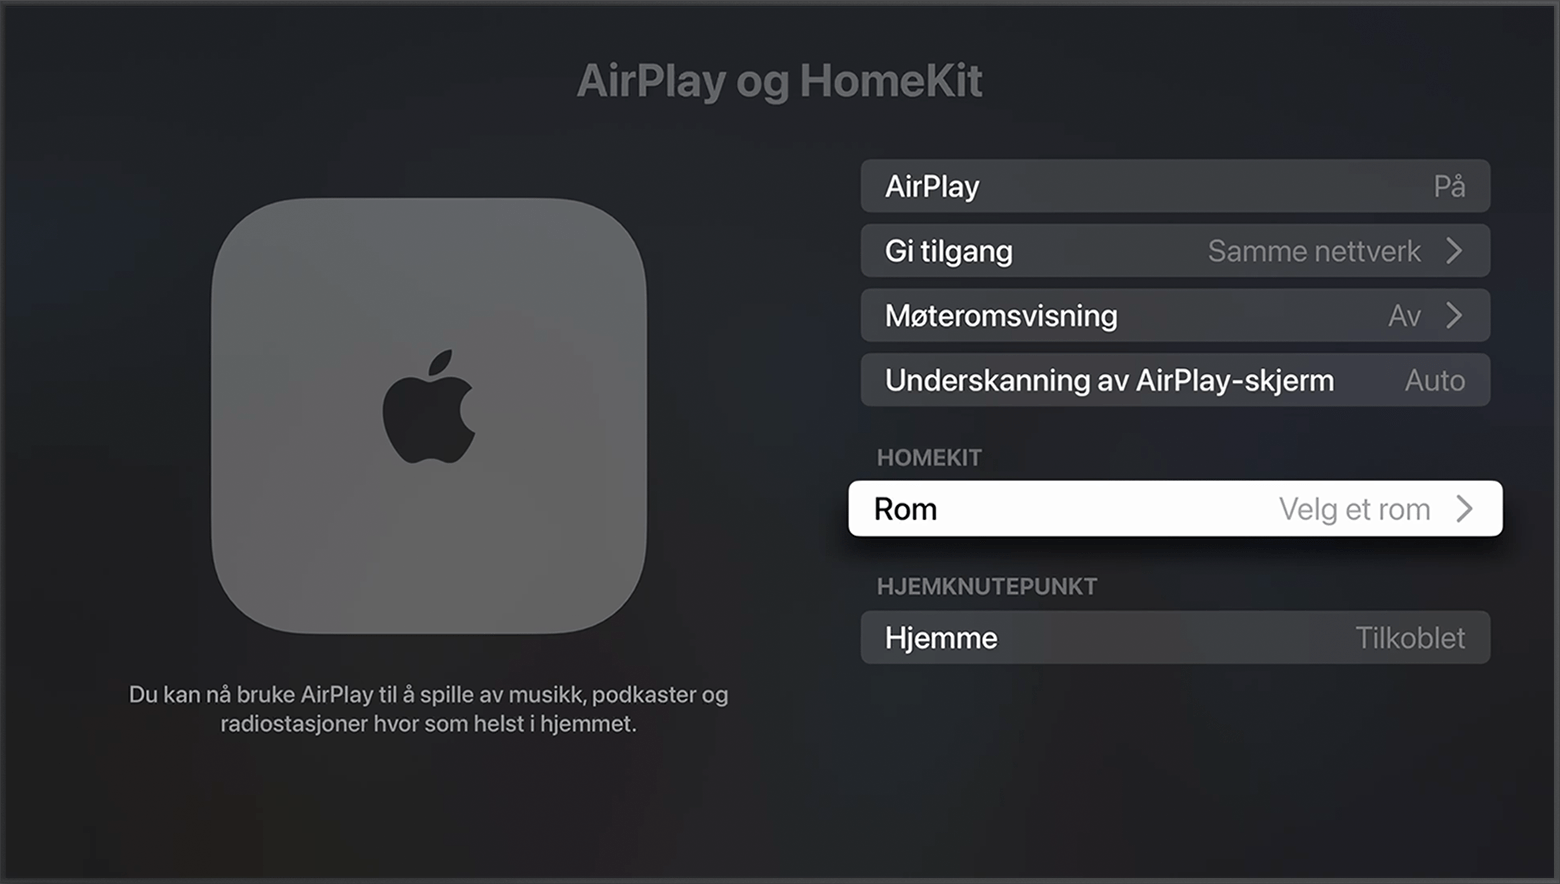 Rommet vises under HomeKit på AirPlay og HomeKit-skjermen i Apple TV-innstillingene